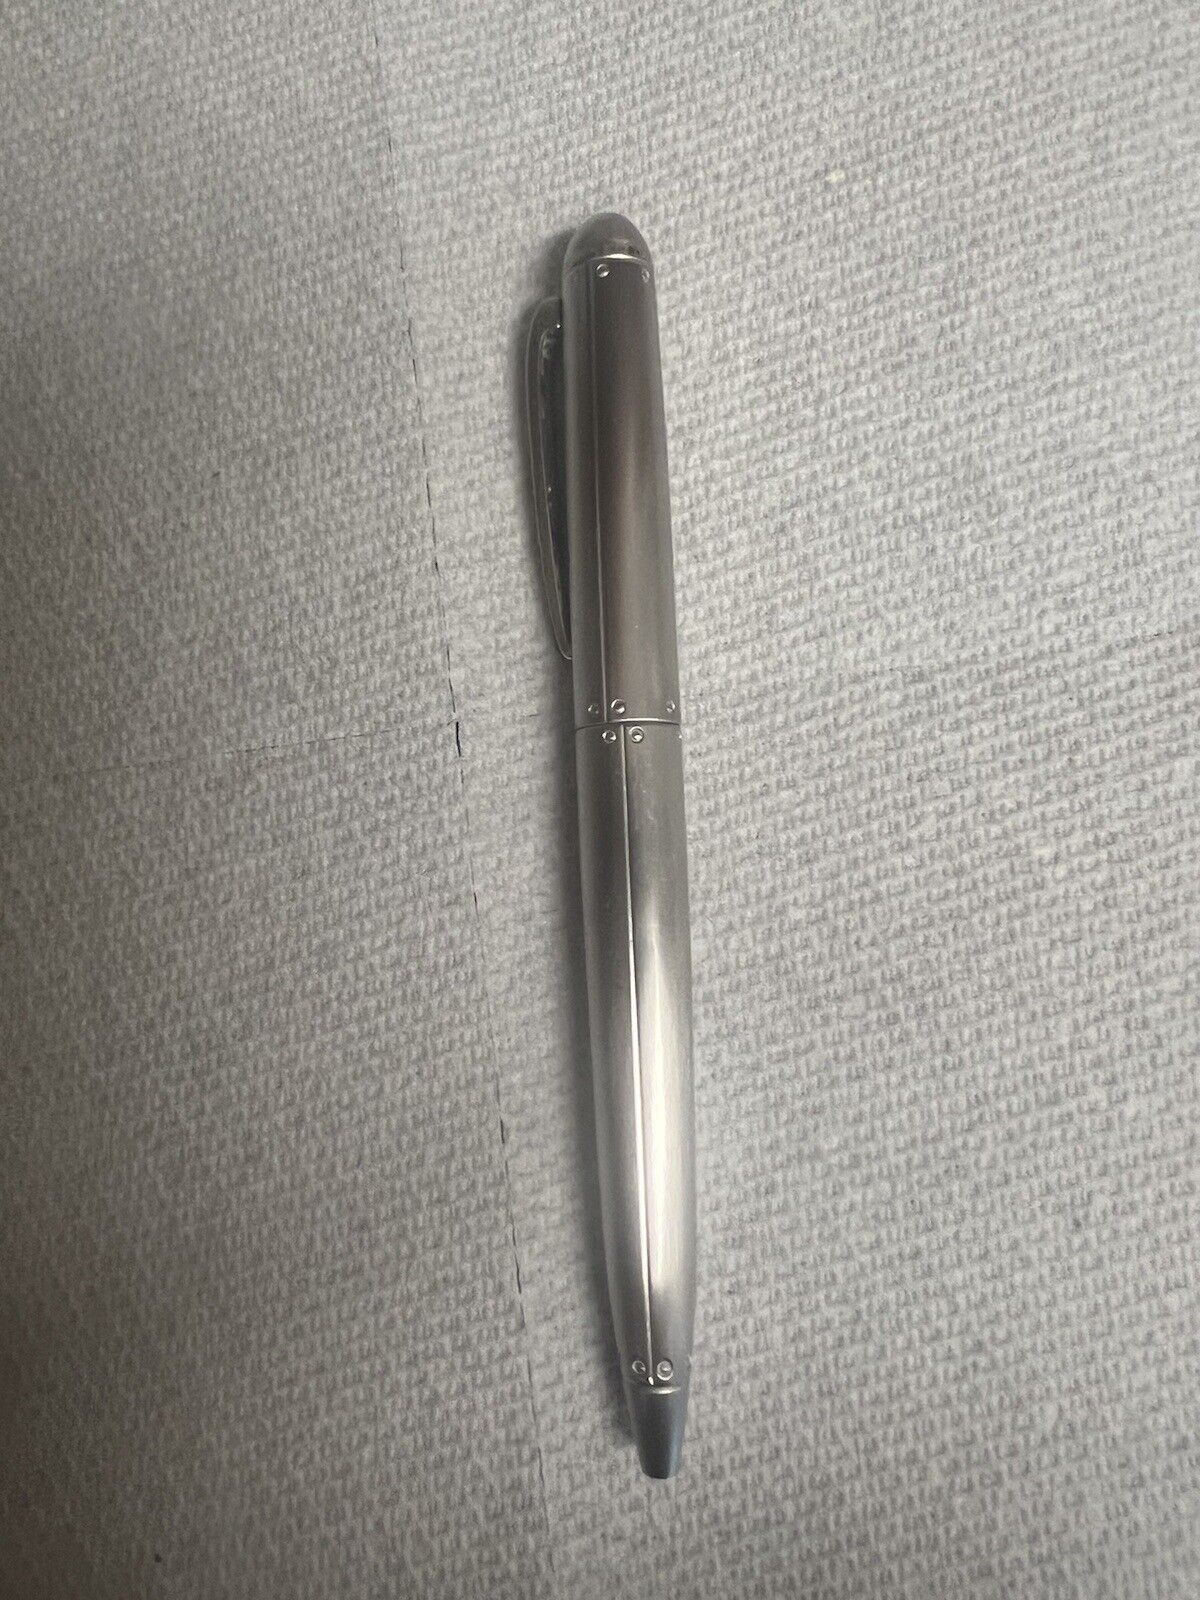 Tiffany & Co Streamerica Silver Pen